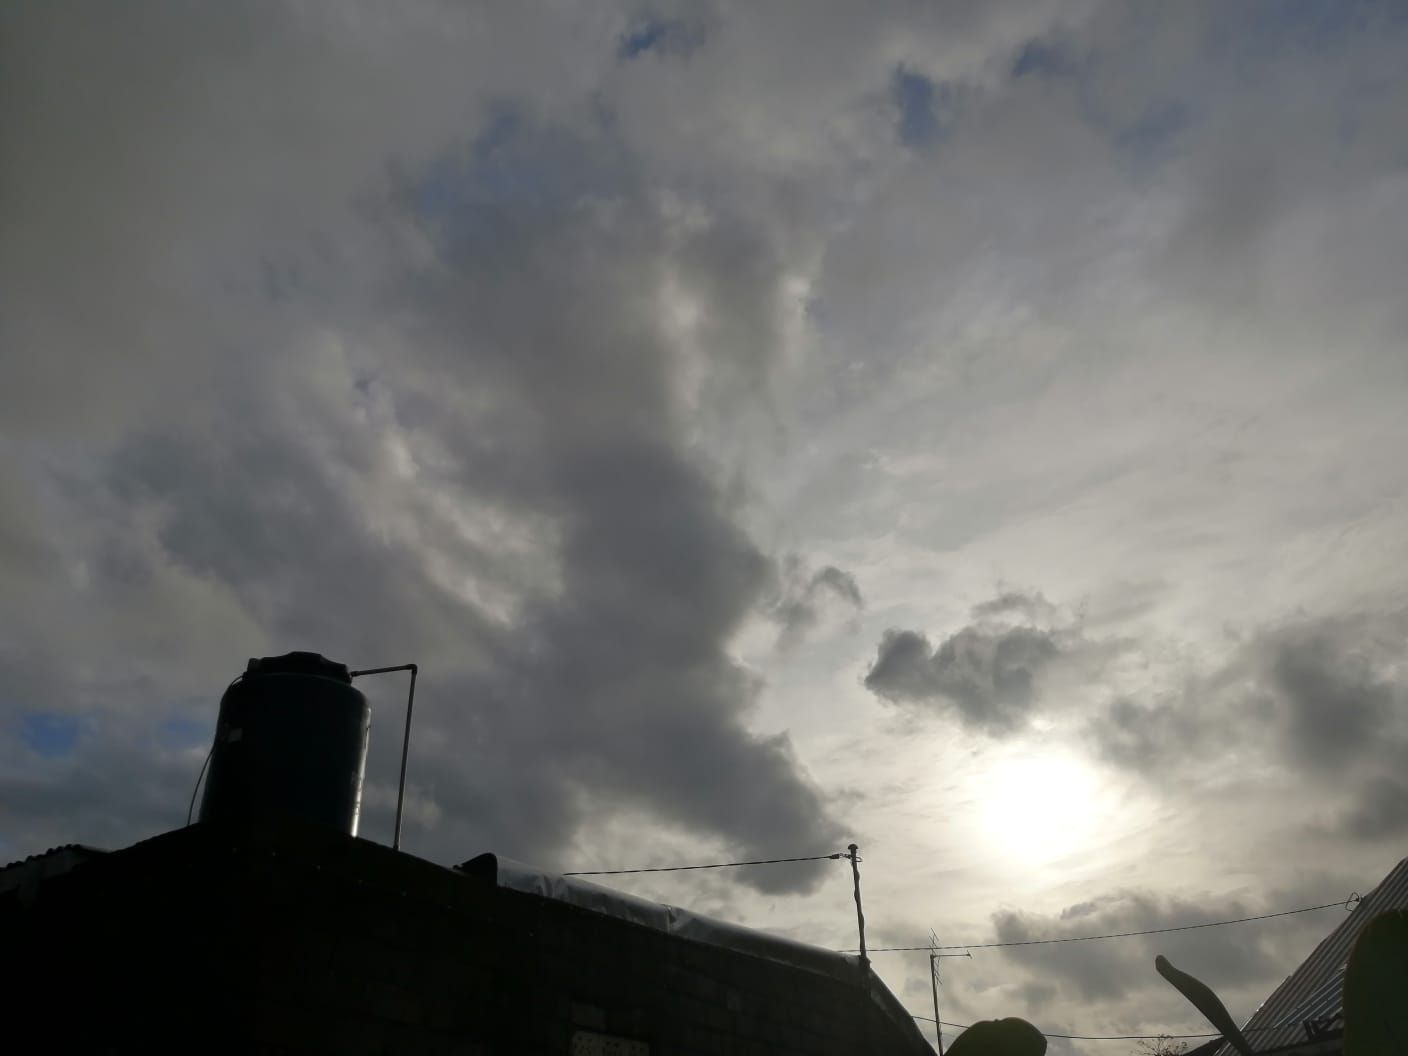 Ilustrasi prakiraan cuaca. Langit pagi berawan disertai gerimis saat fajar.